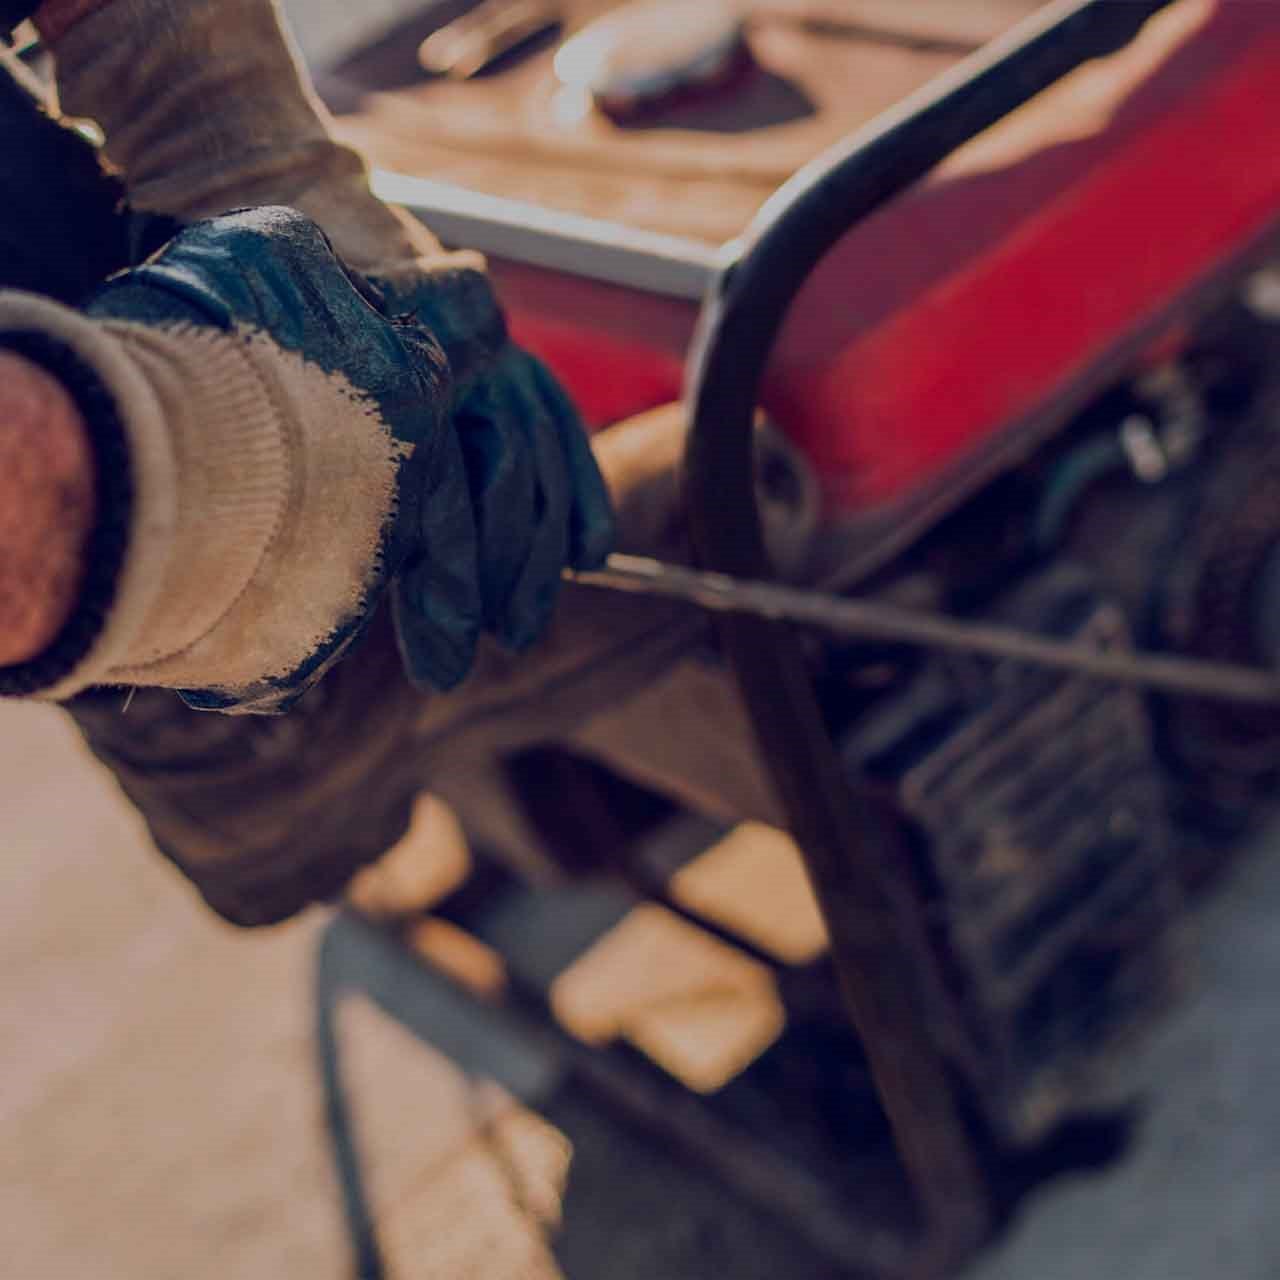 Mains d'un ouvrier en gants de chantier tirant sur le câble de démarrage pour mettre en marche une génératrice sur le chantier.